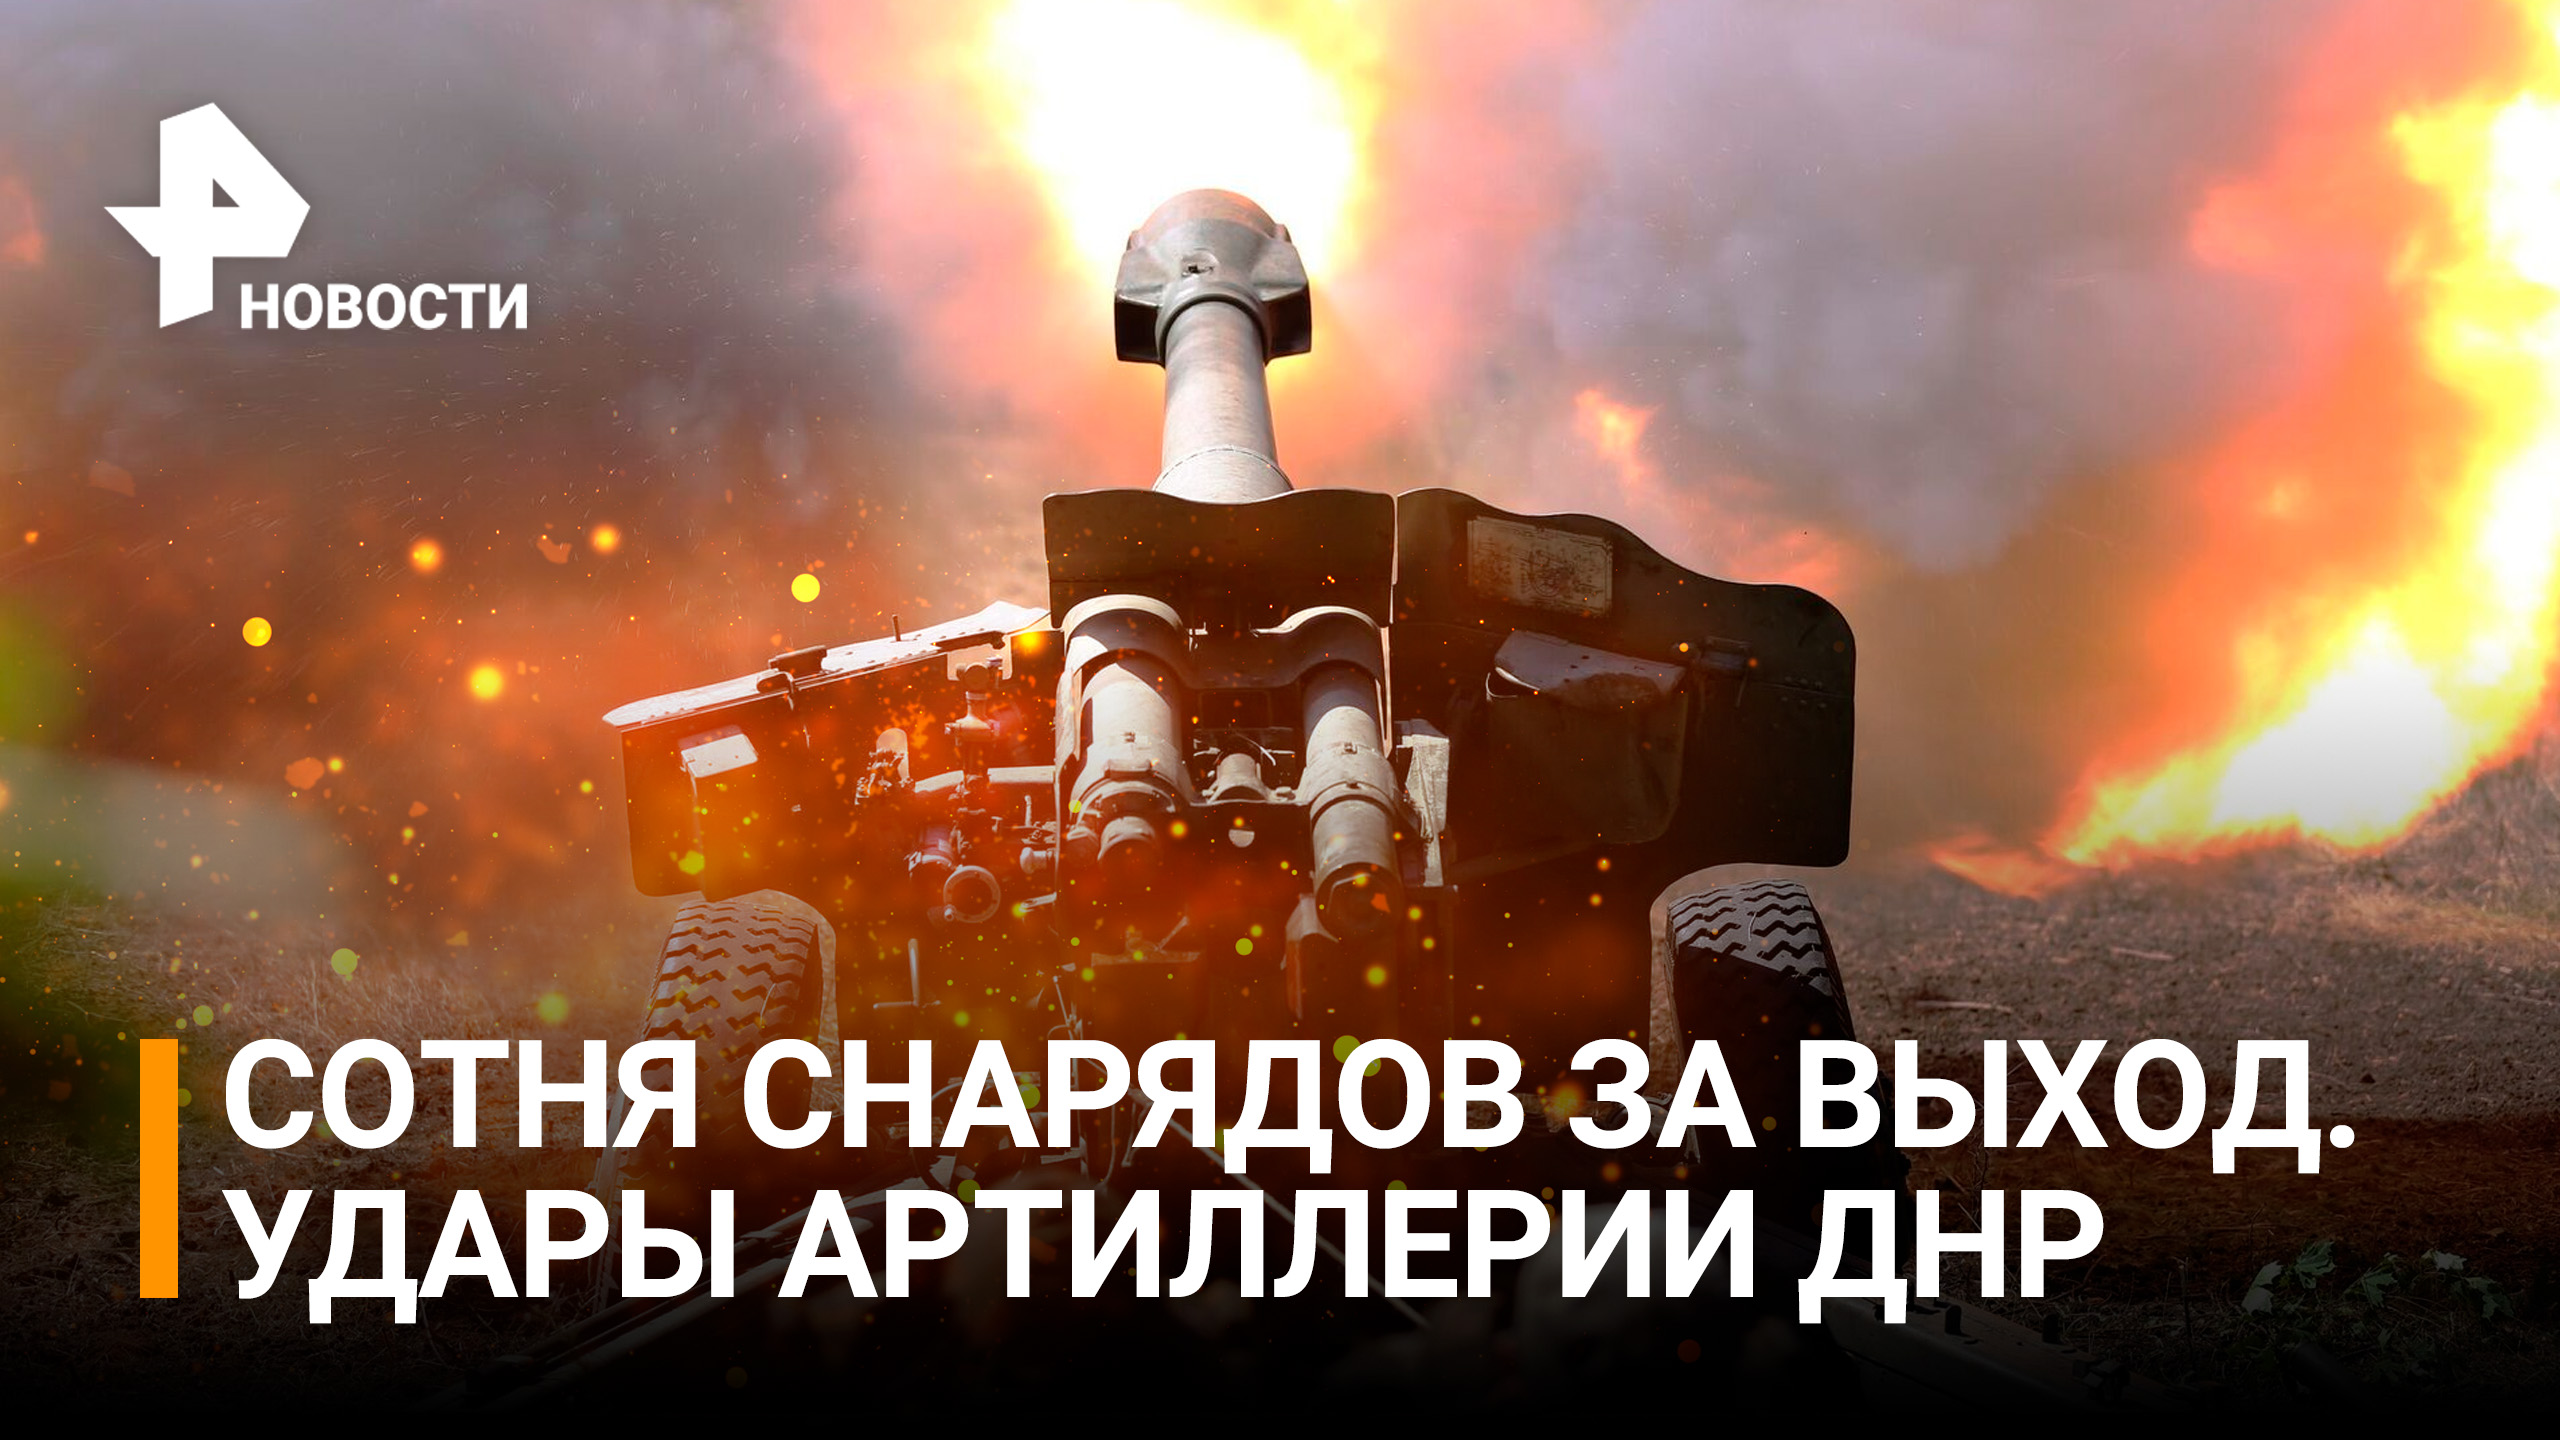 Артиллерия ДНР поддерживает рекордный темп, уничтожая отступающие силы ВСУ / РЕН Новости